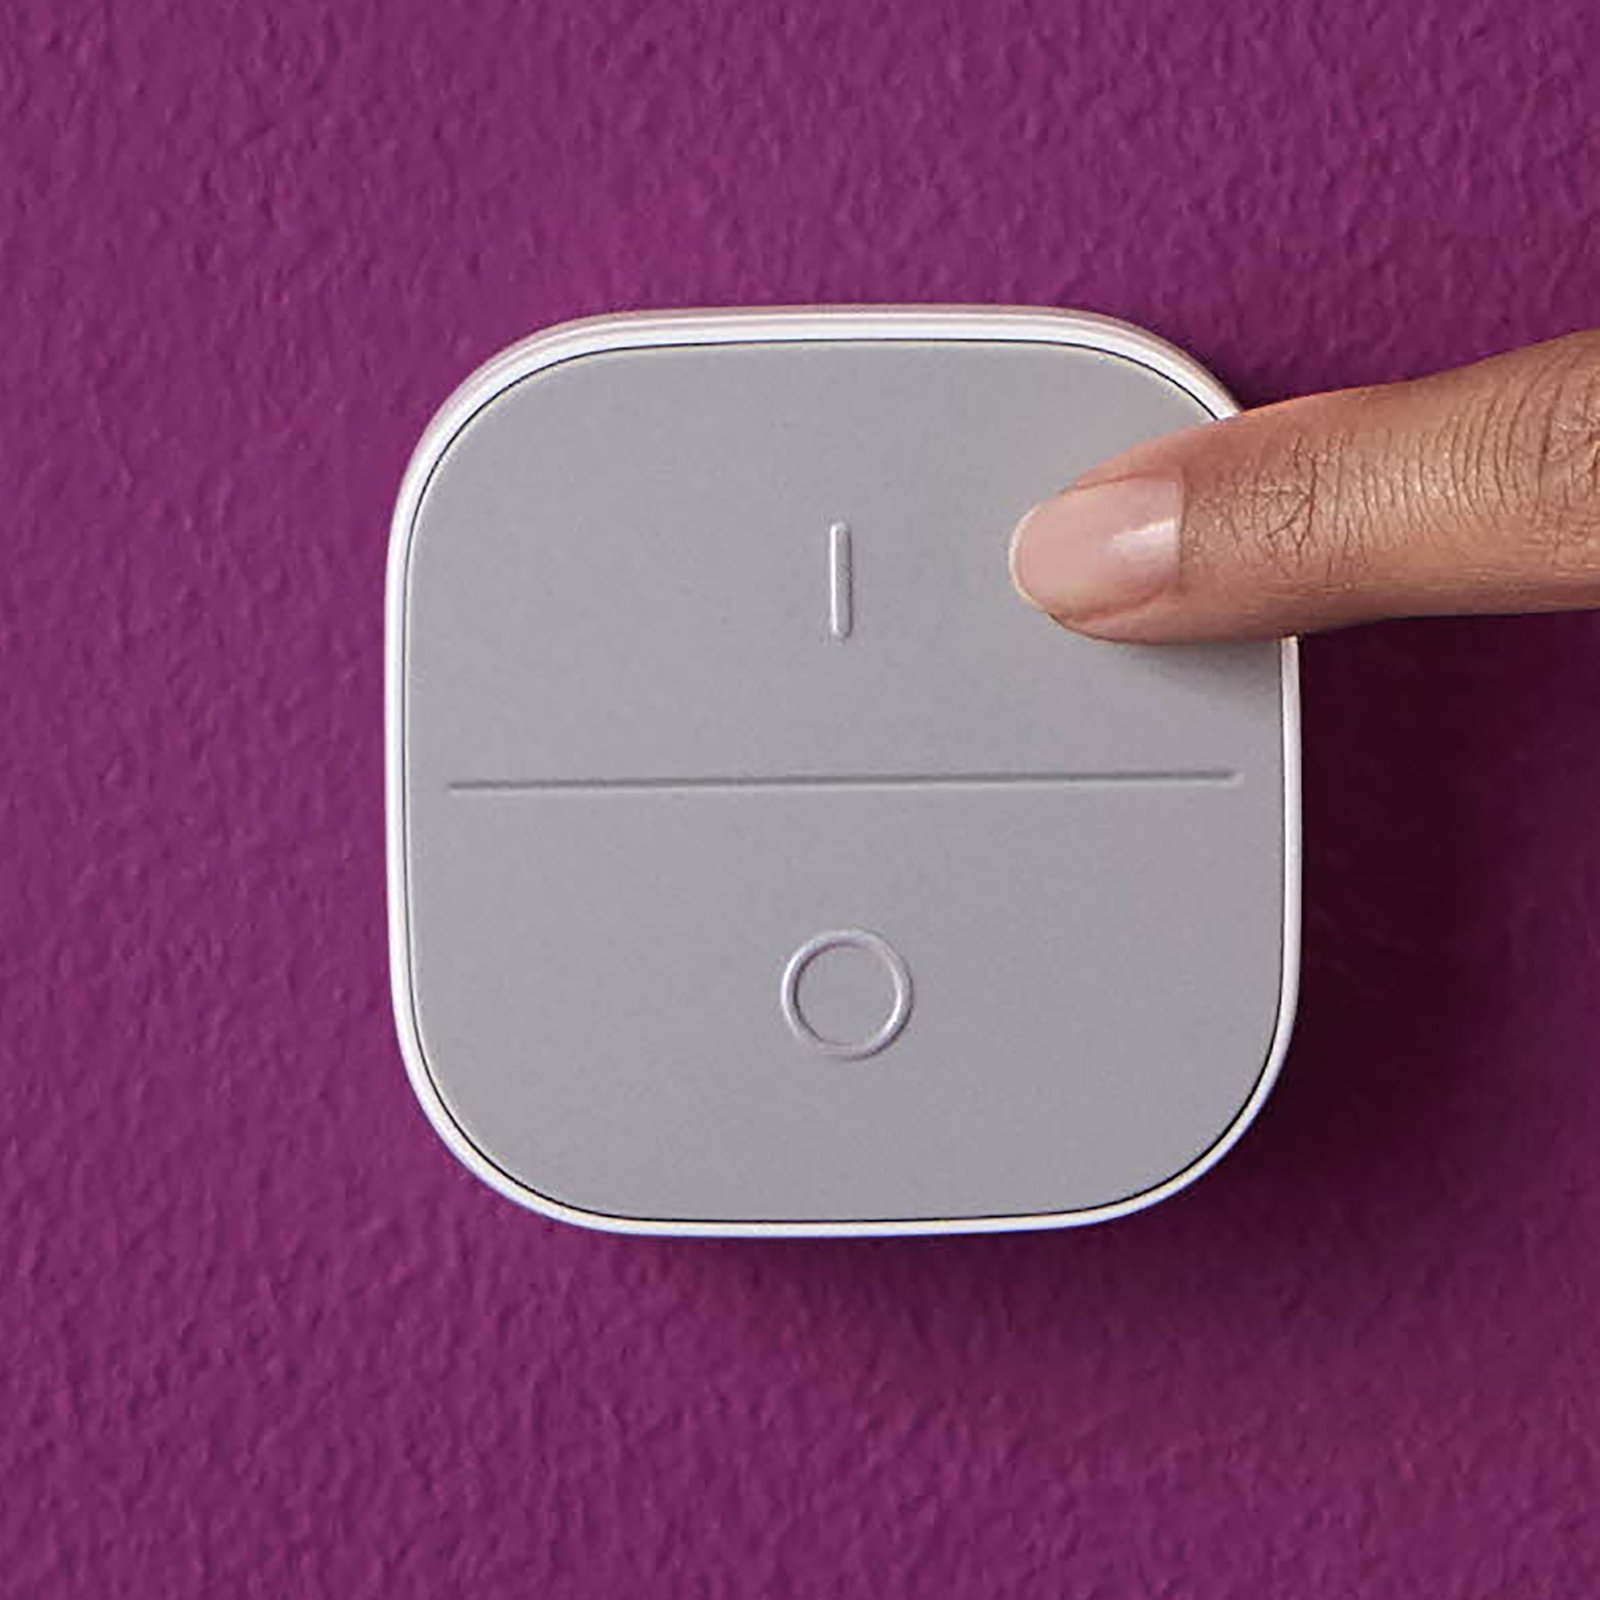 WiZ Portable Button, interrupteur mural mobile